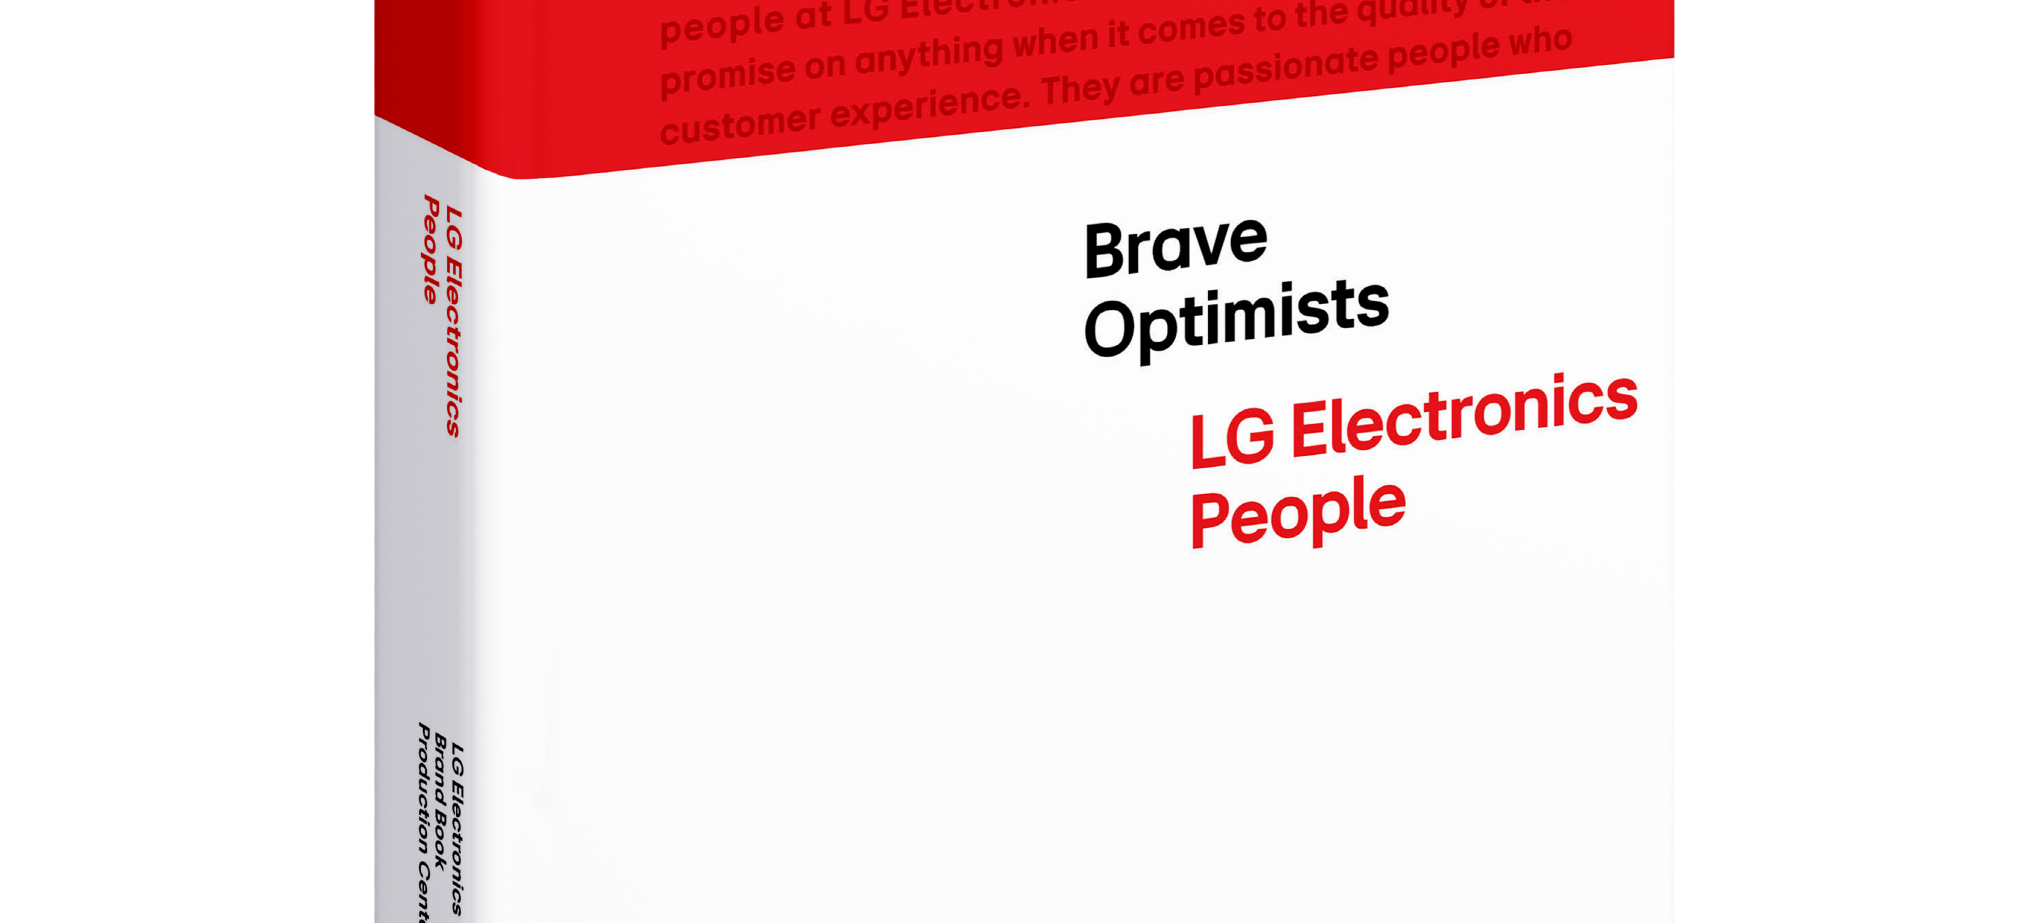 Η LG παρουσιάζει το βιβλίο “Brave optimists” προβάλλοντας το μοναδικό της αισιόδοξο DNA